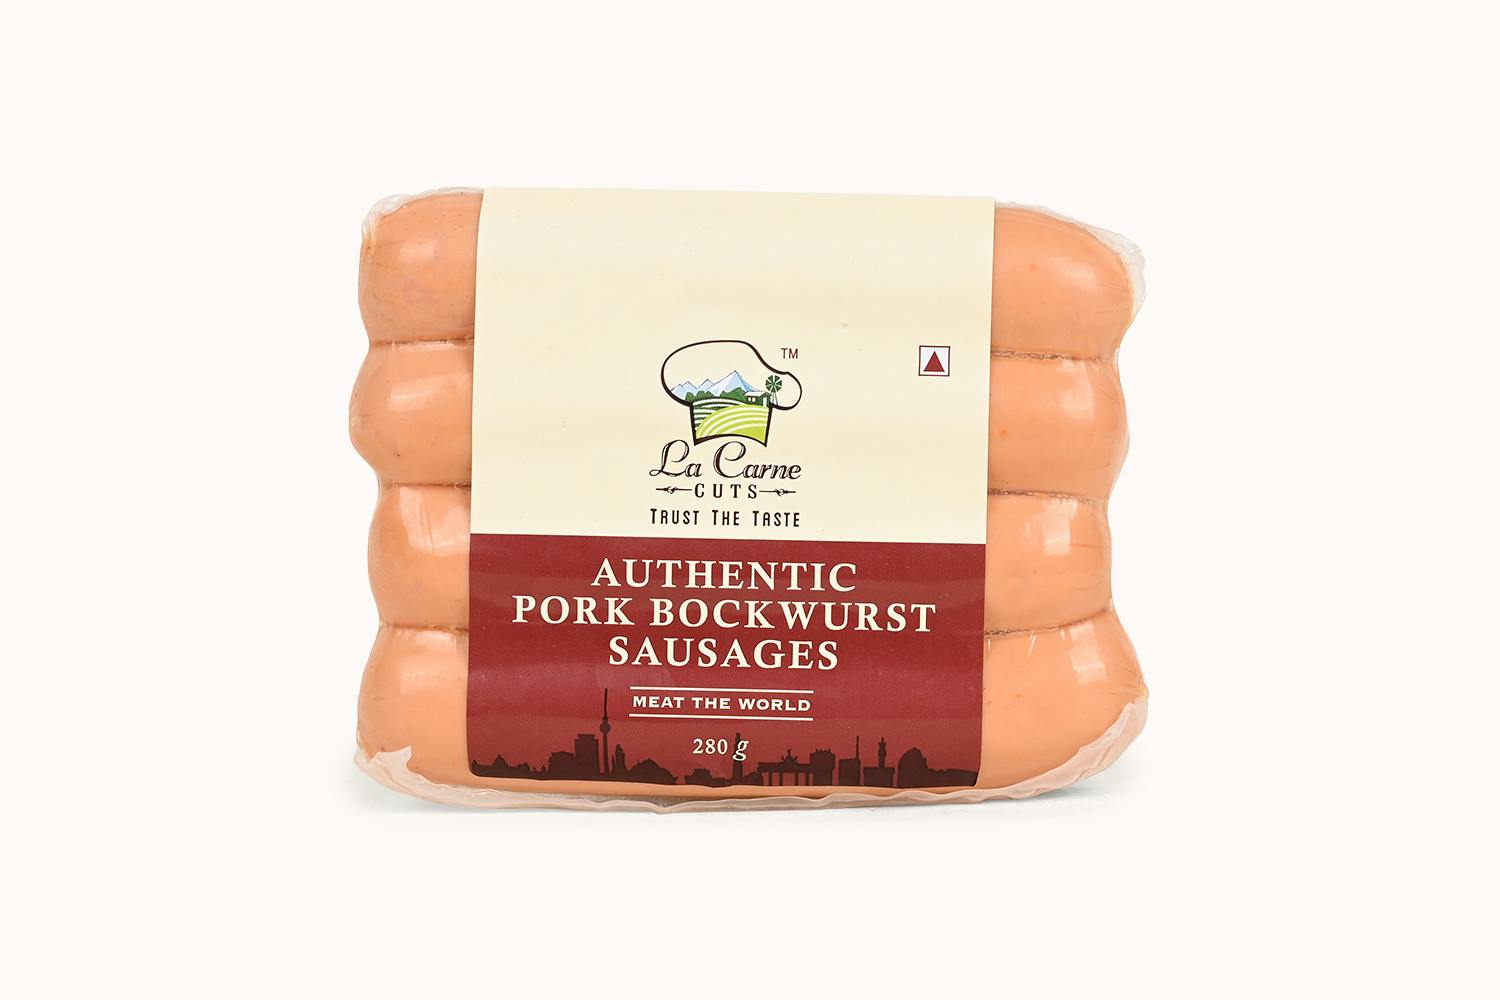 La Carne Pork Bockwurst